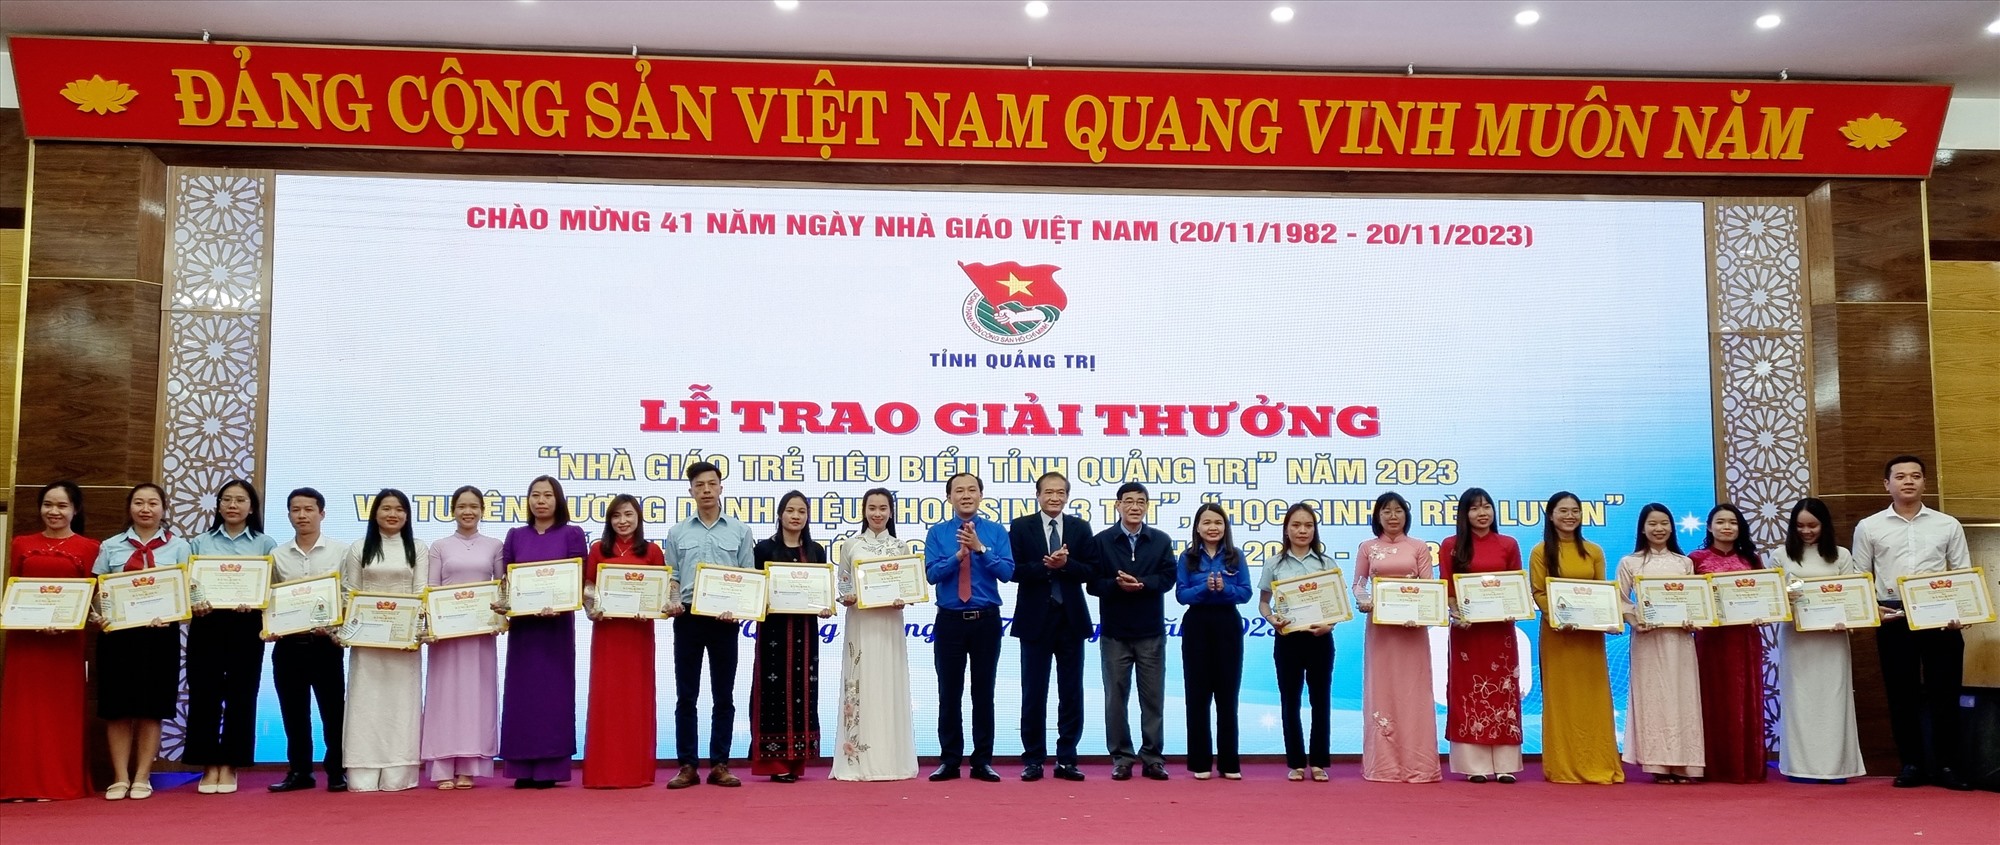 Trao Giải thưởng “Nhà giáo trẻ tiêu biểu tỉnh Quảng Trị” năm 2023 cho 20 cán bộ, giảng viên, giáo viên - Ảnh: K.S